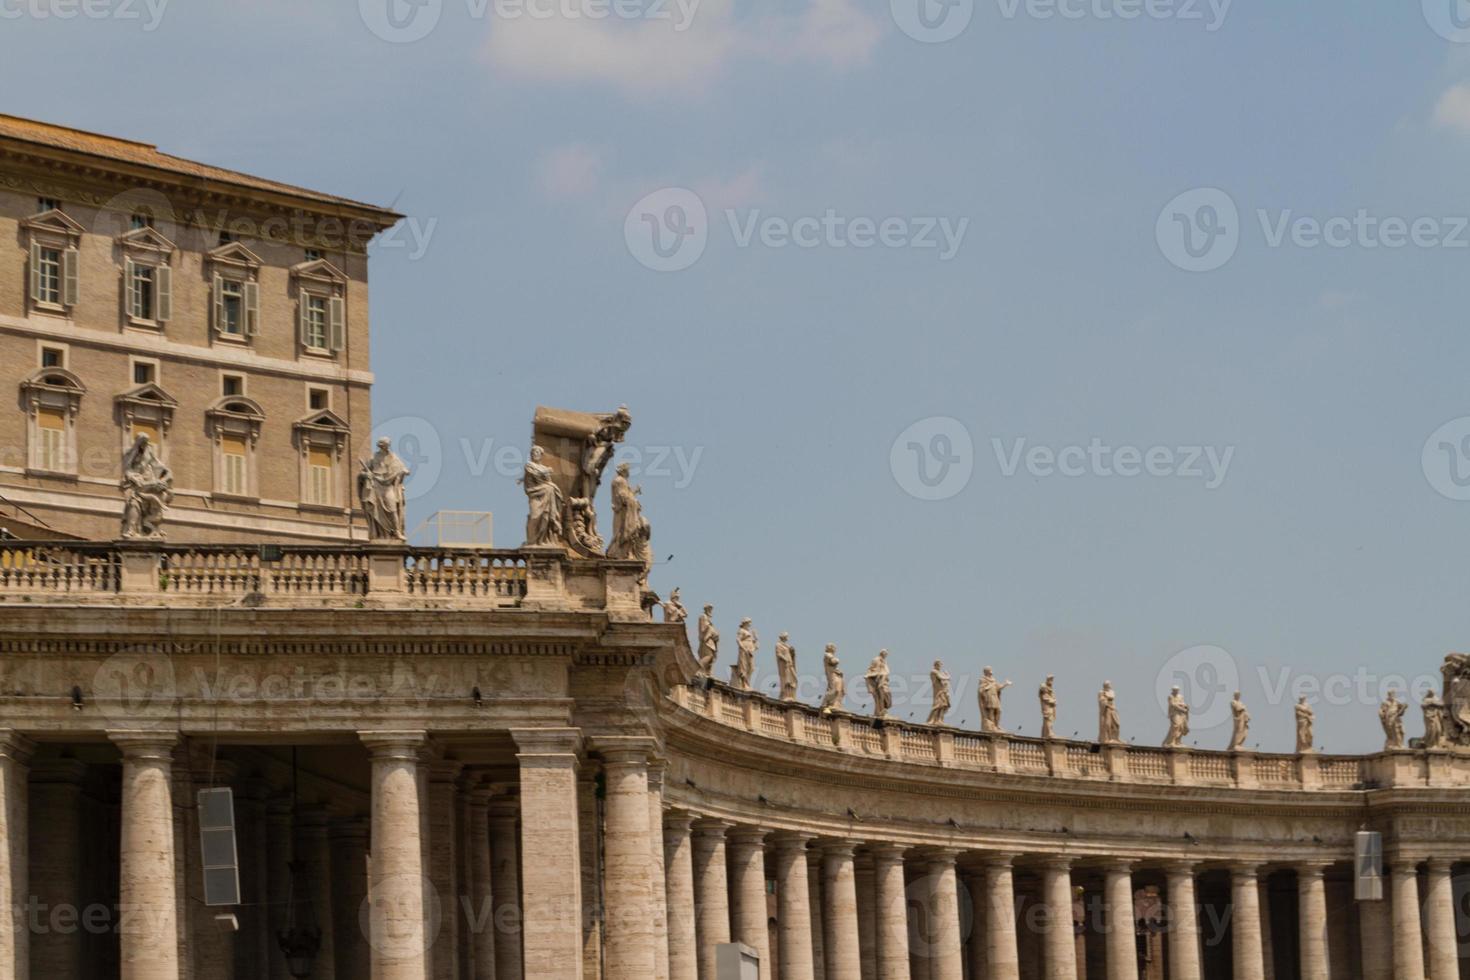 byggnader i Vatikanen, den heliga stolen i Rom, Italien. del av Peterskyrkan. foto